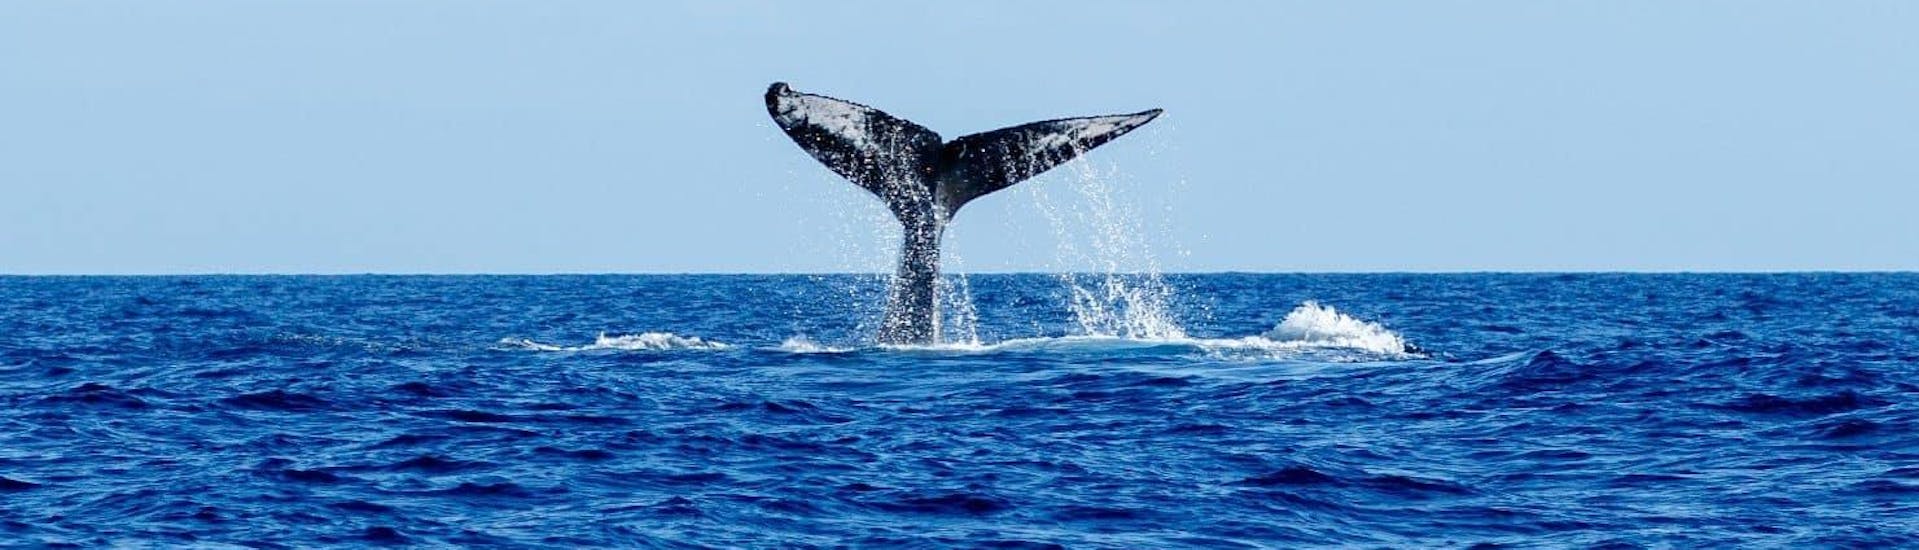 Walbeobachtung & Schwimmen mit Delfinen ab Funchal.